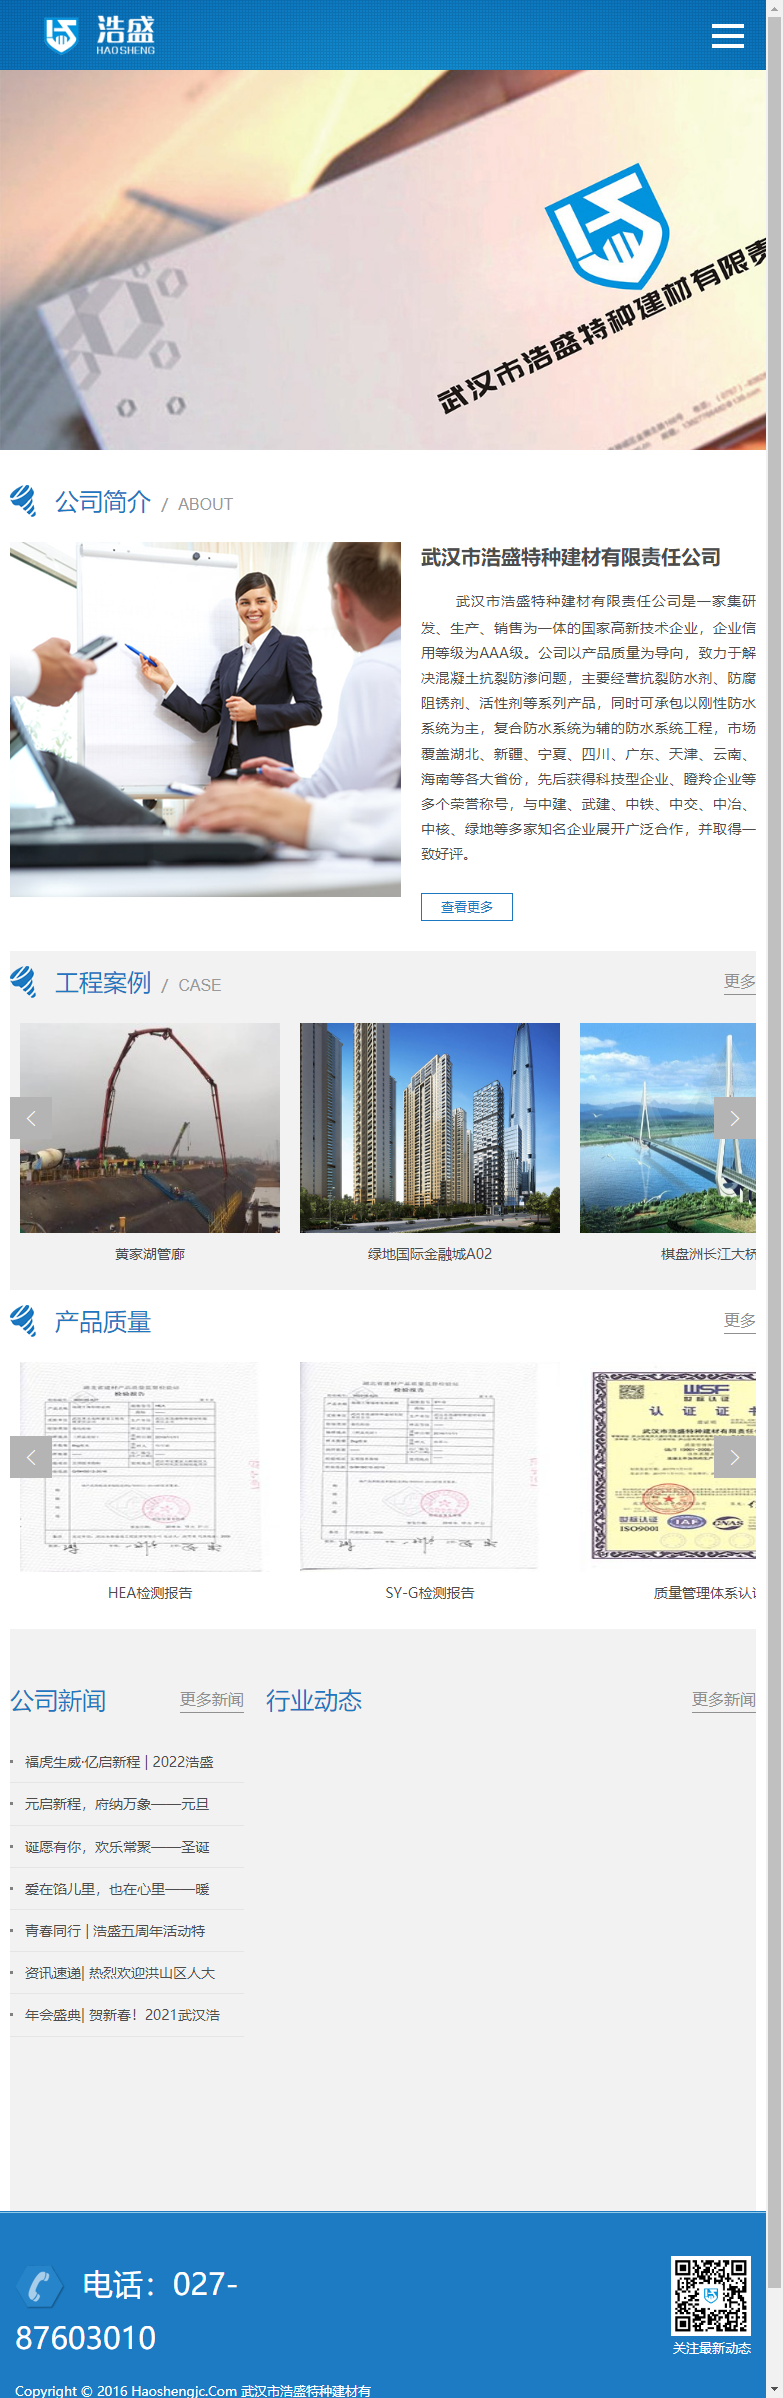 武汉市浩盛特种建材有限责任公司网站案例